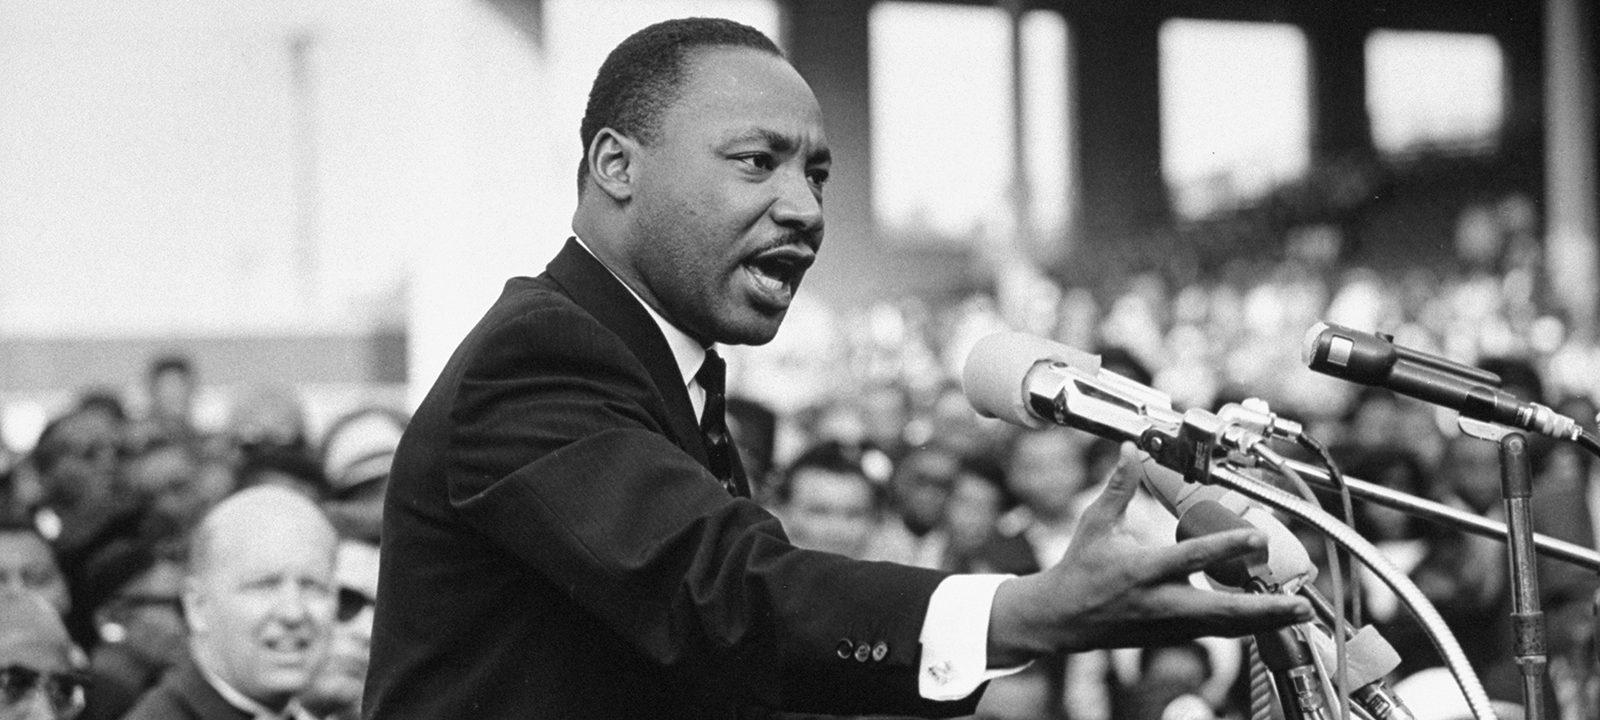 Día del Dr. Martín L. King Jr. y cambio de gobierno en la Casa Blanca.